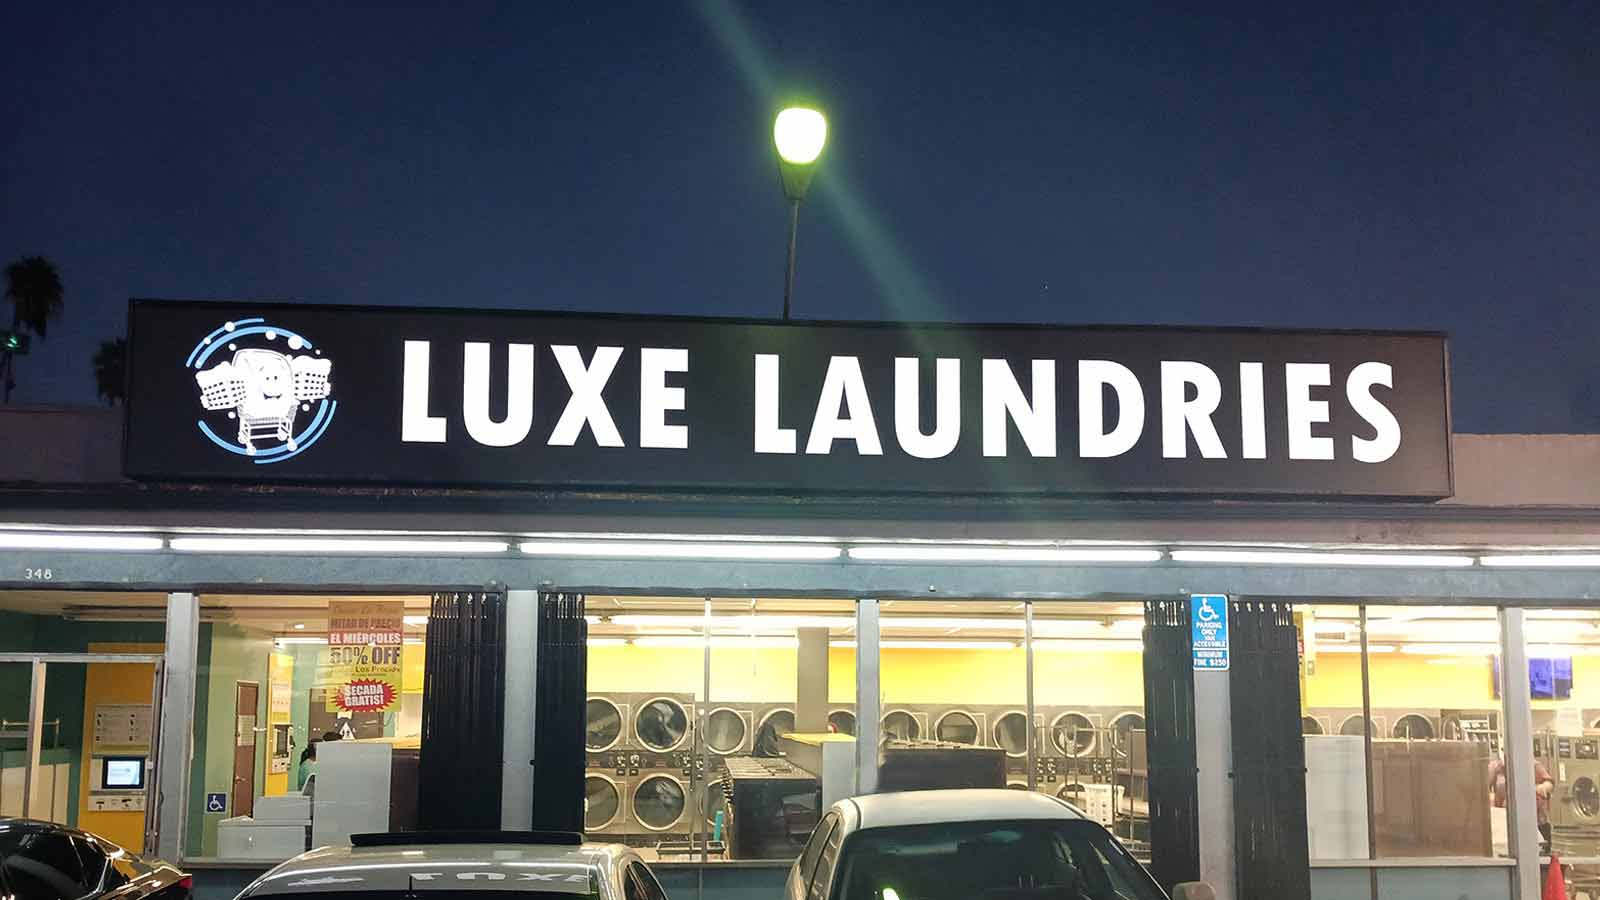 luxe laundries illuminated sign